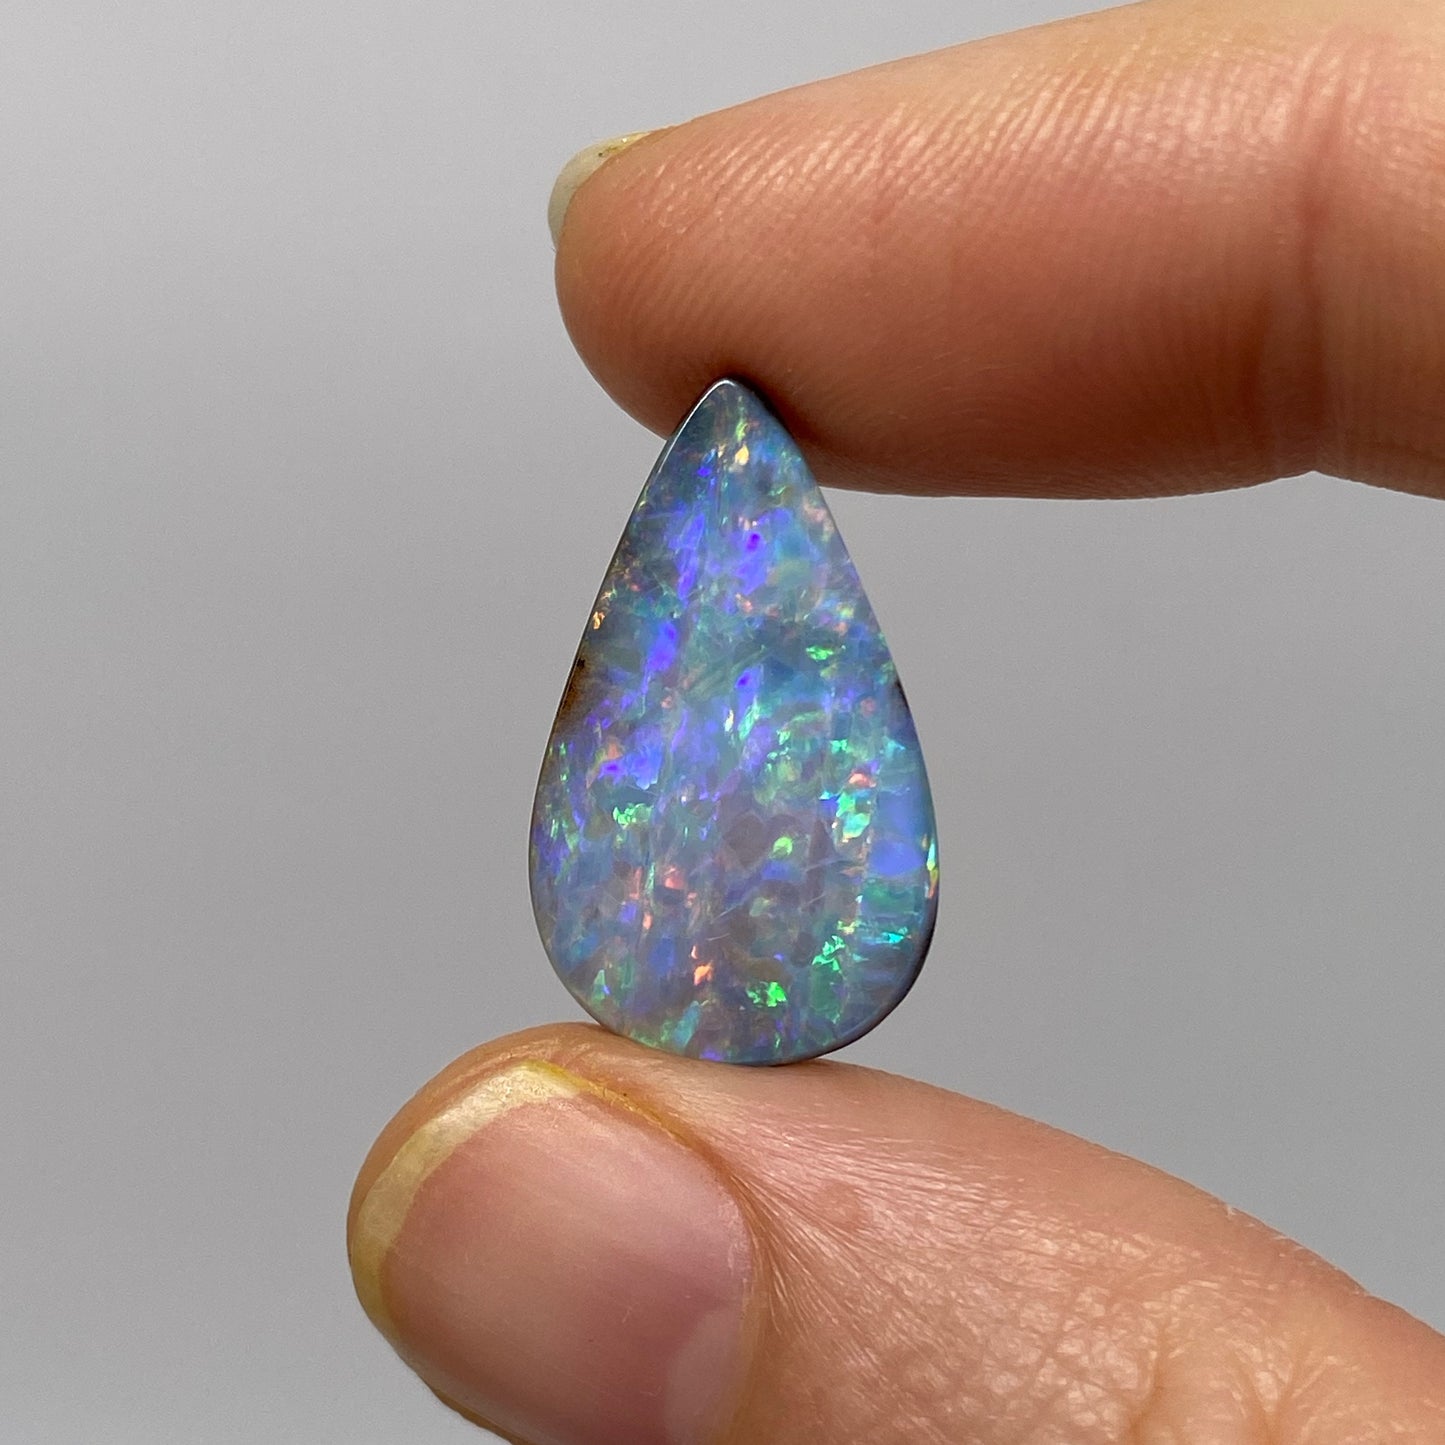 15.97 Ct teardrop boulder opal pair